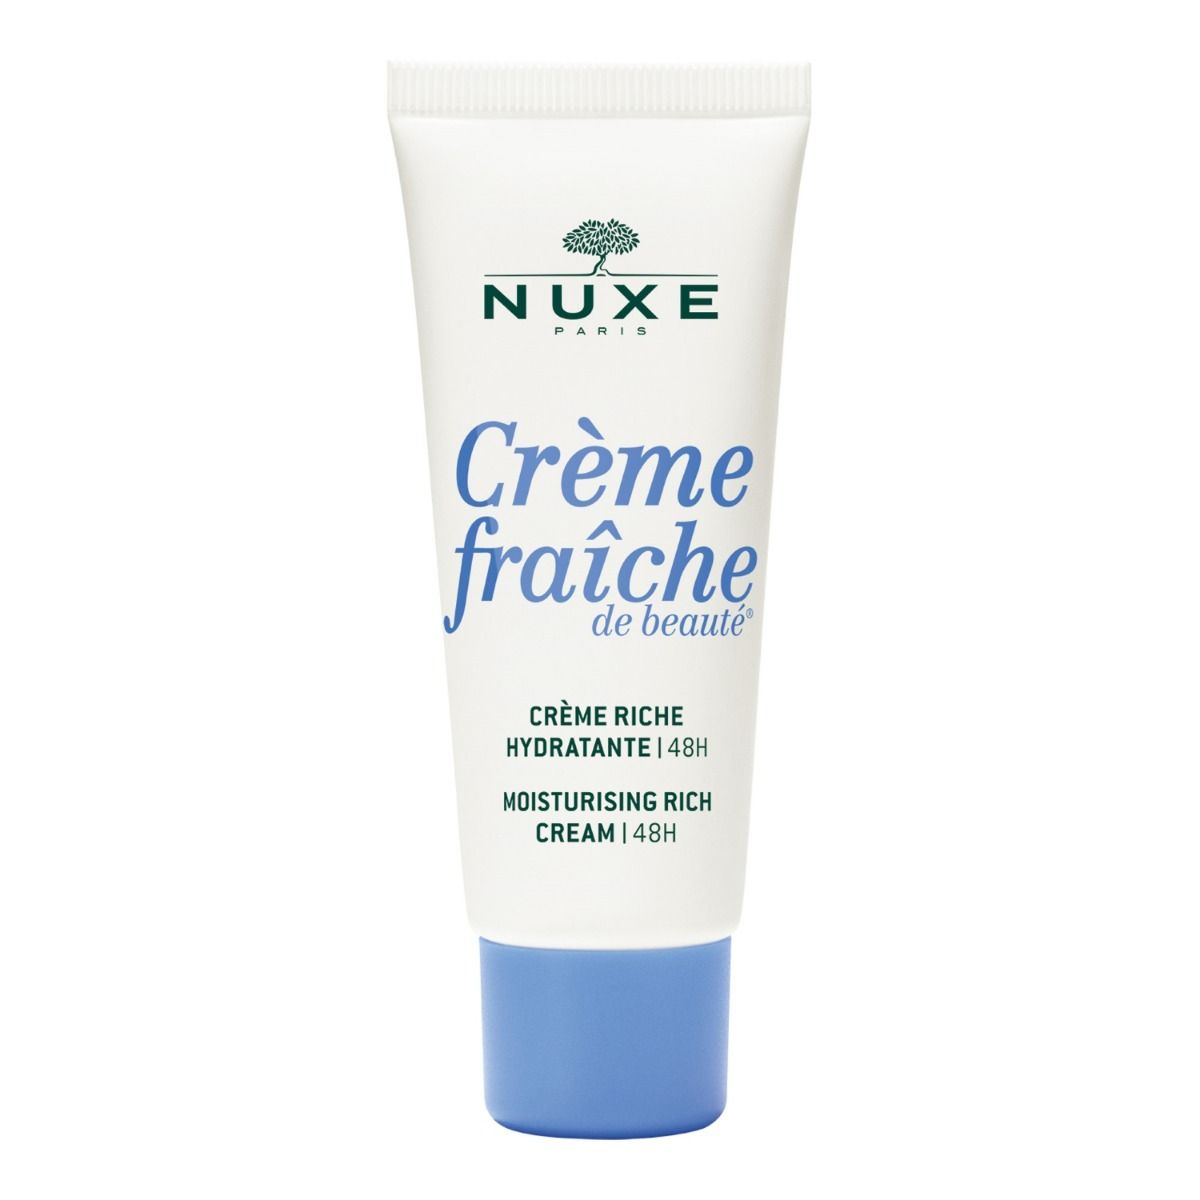 Nuxe Crème Fraîche de Beauté крем для лица, 30 ml цена и фото